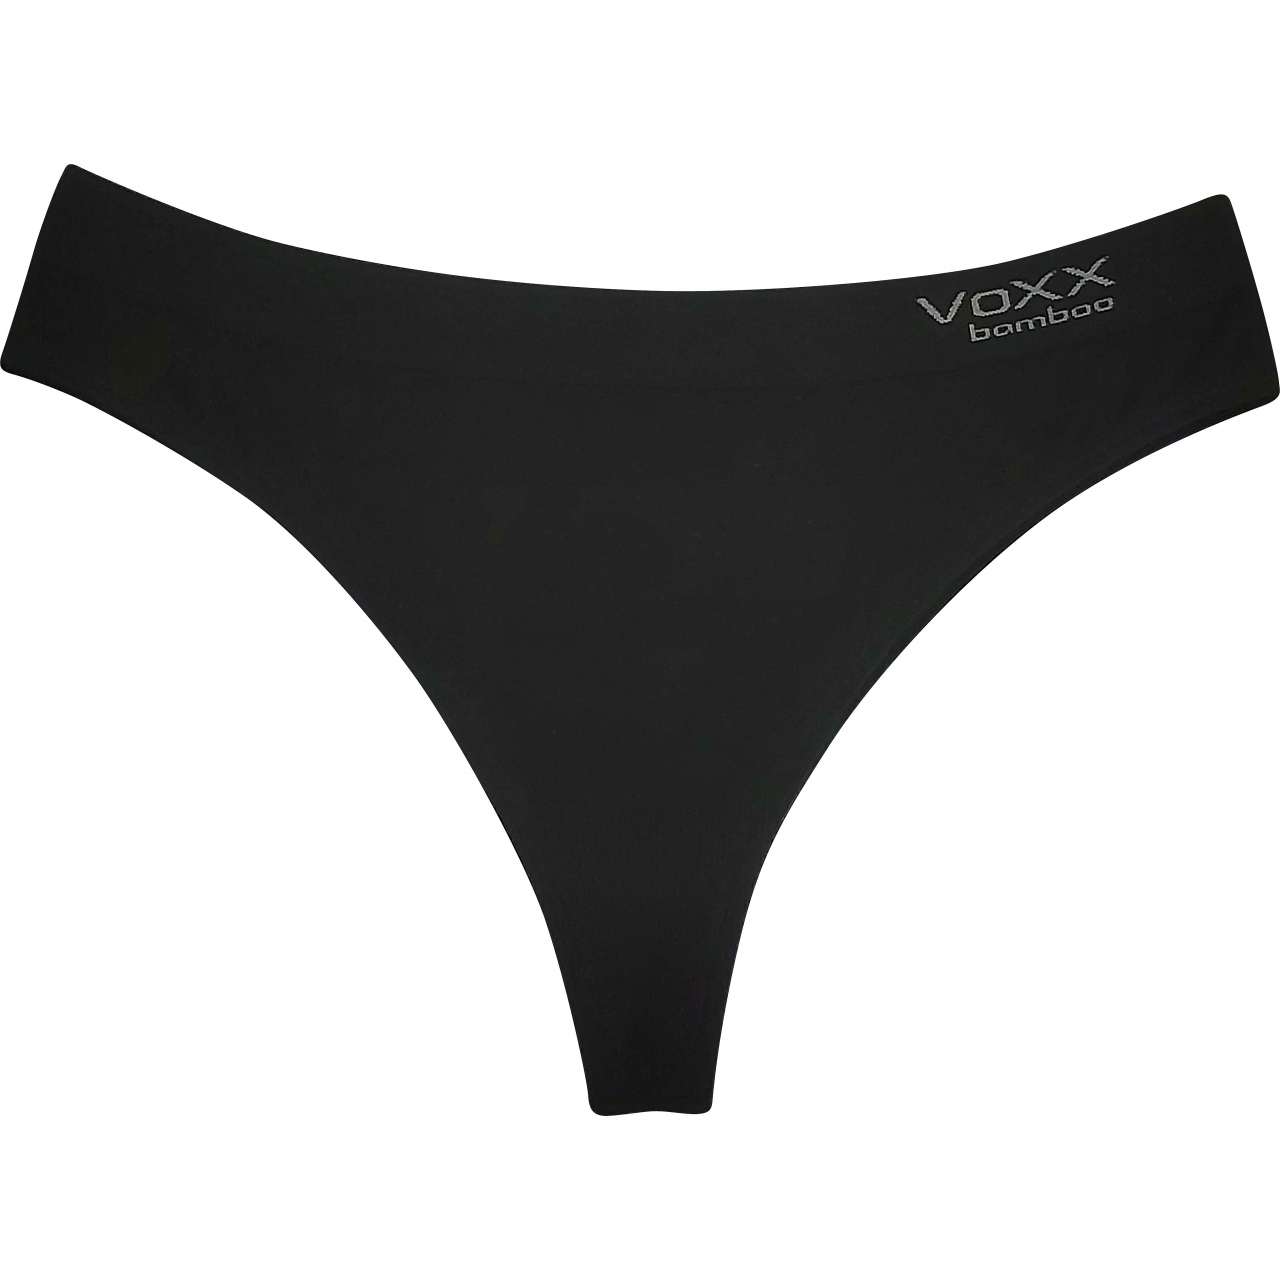 Kalhotky dámské Voxx BambooSeamless 006 - černé, M/L